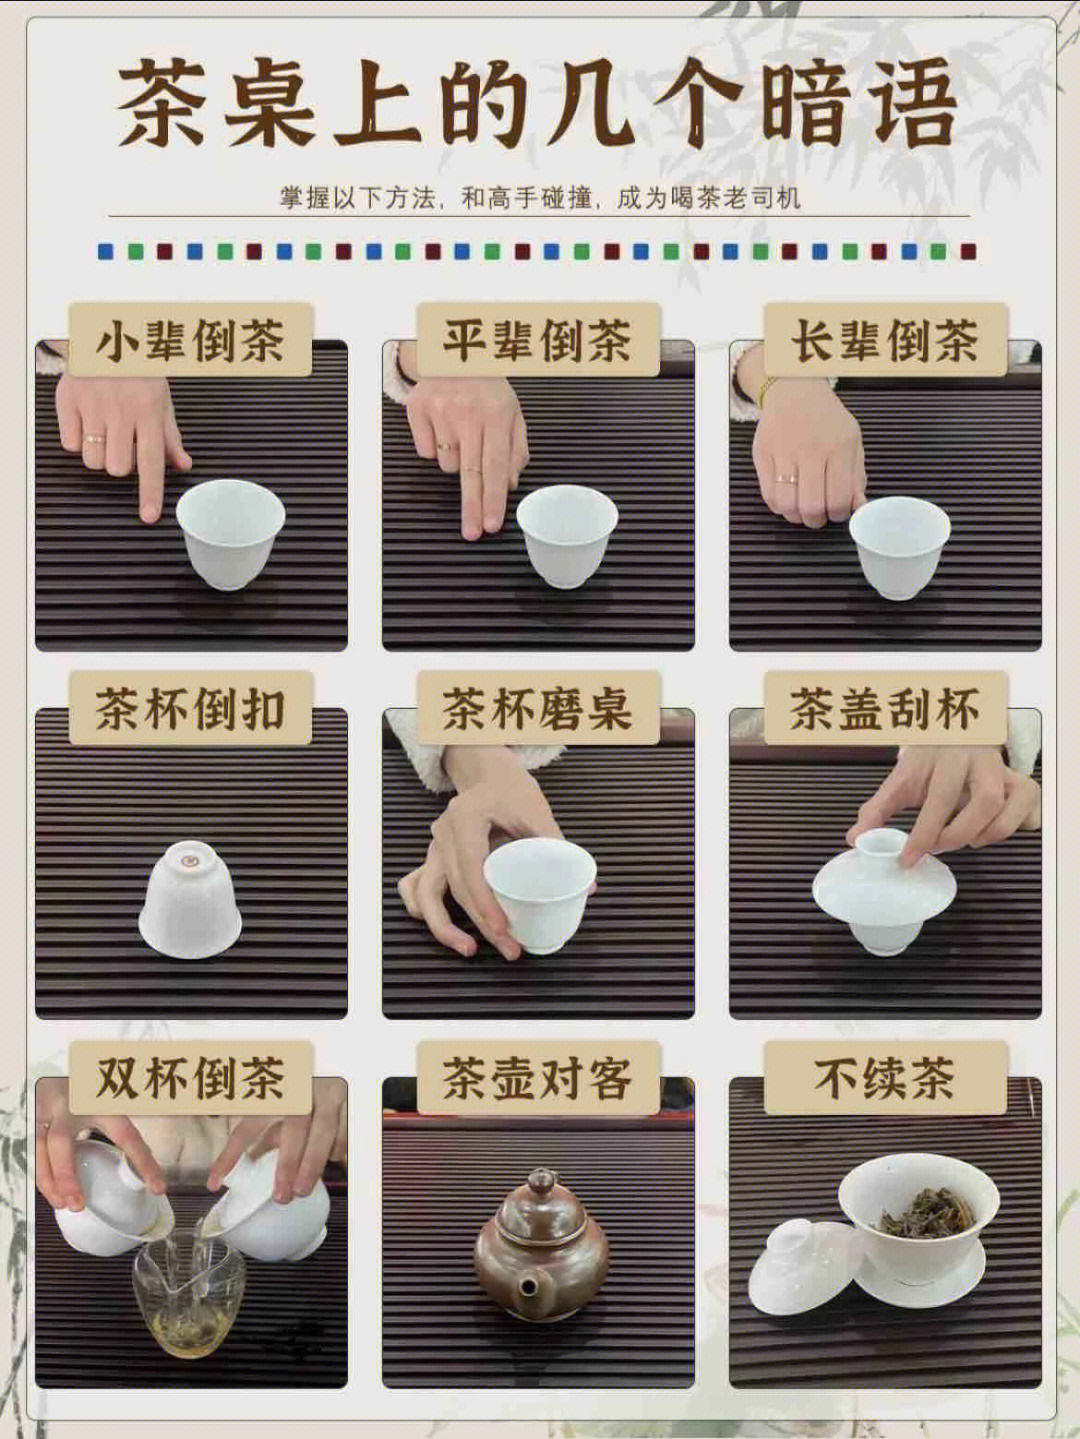 拿茶杯的手势图解图片